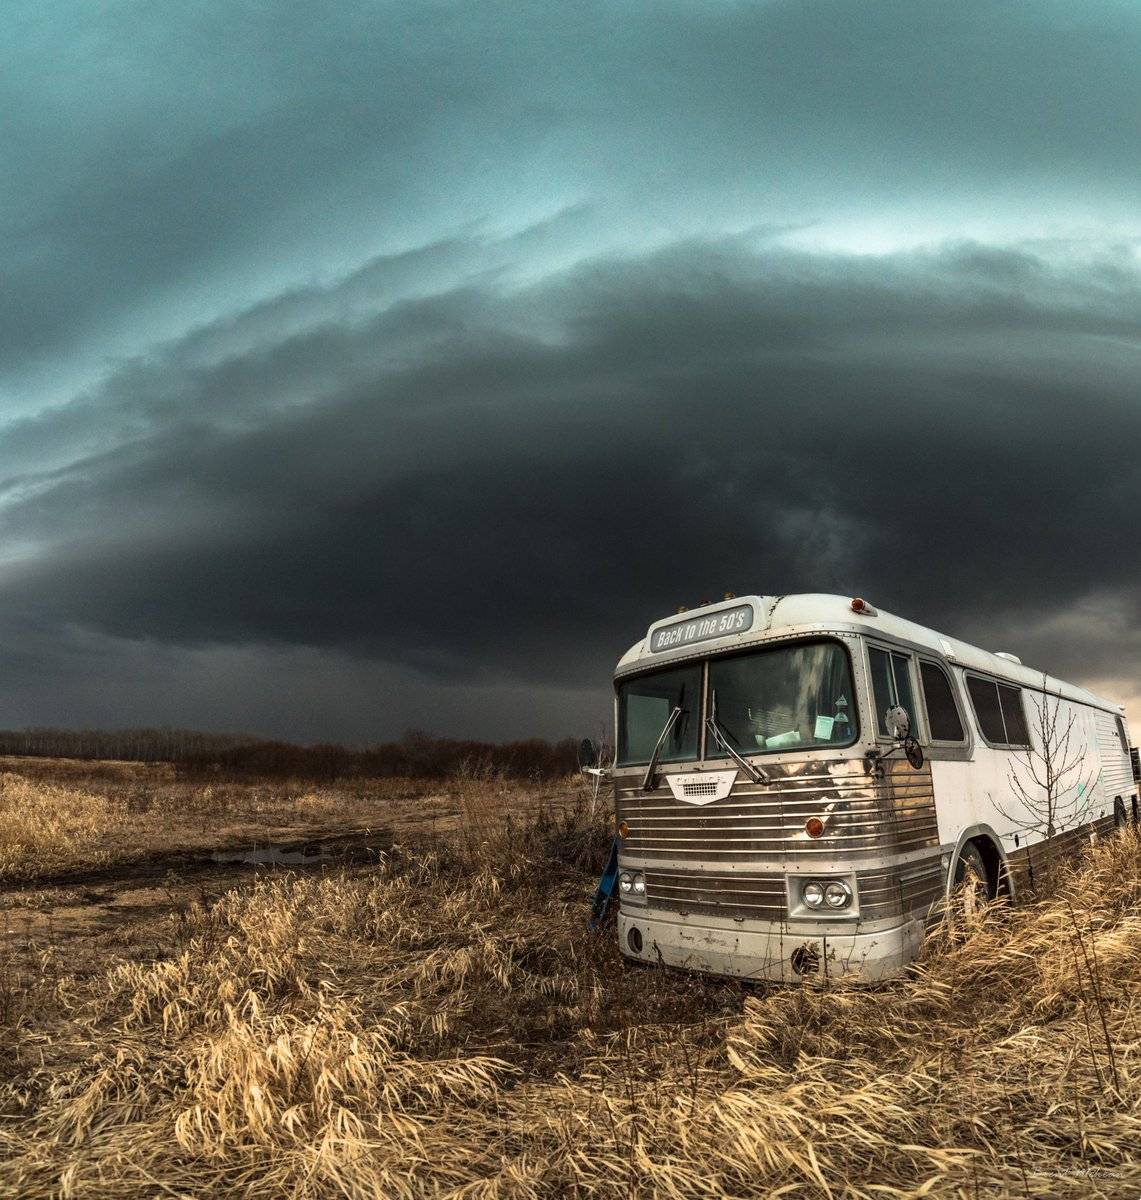 Taken in Eastern Manitoba, Canada by Brent Mckean @BrentMckean501